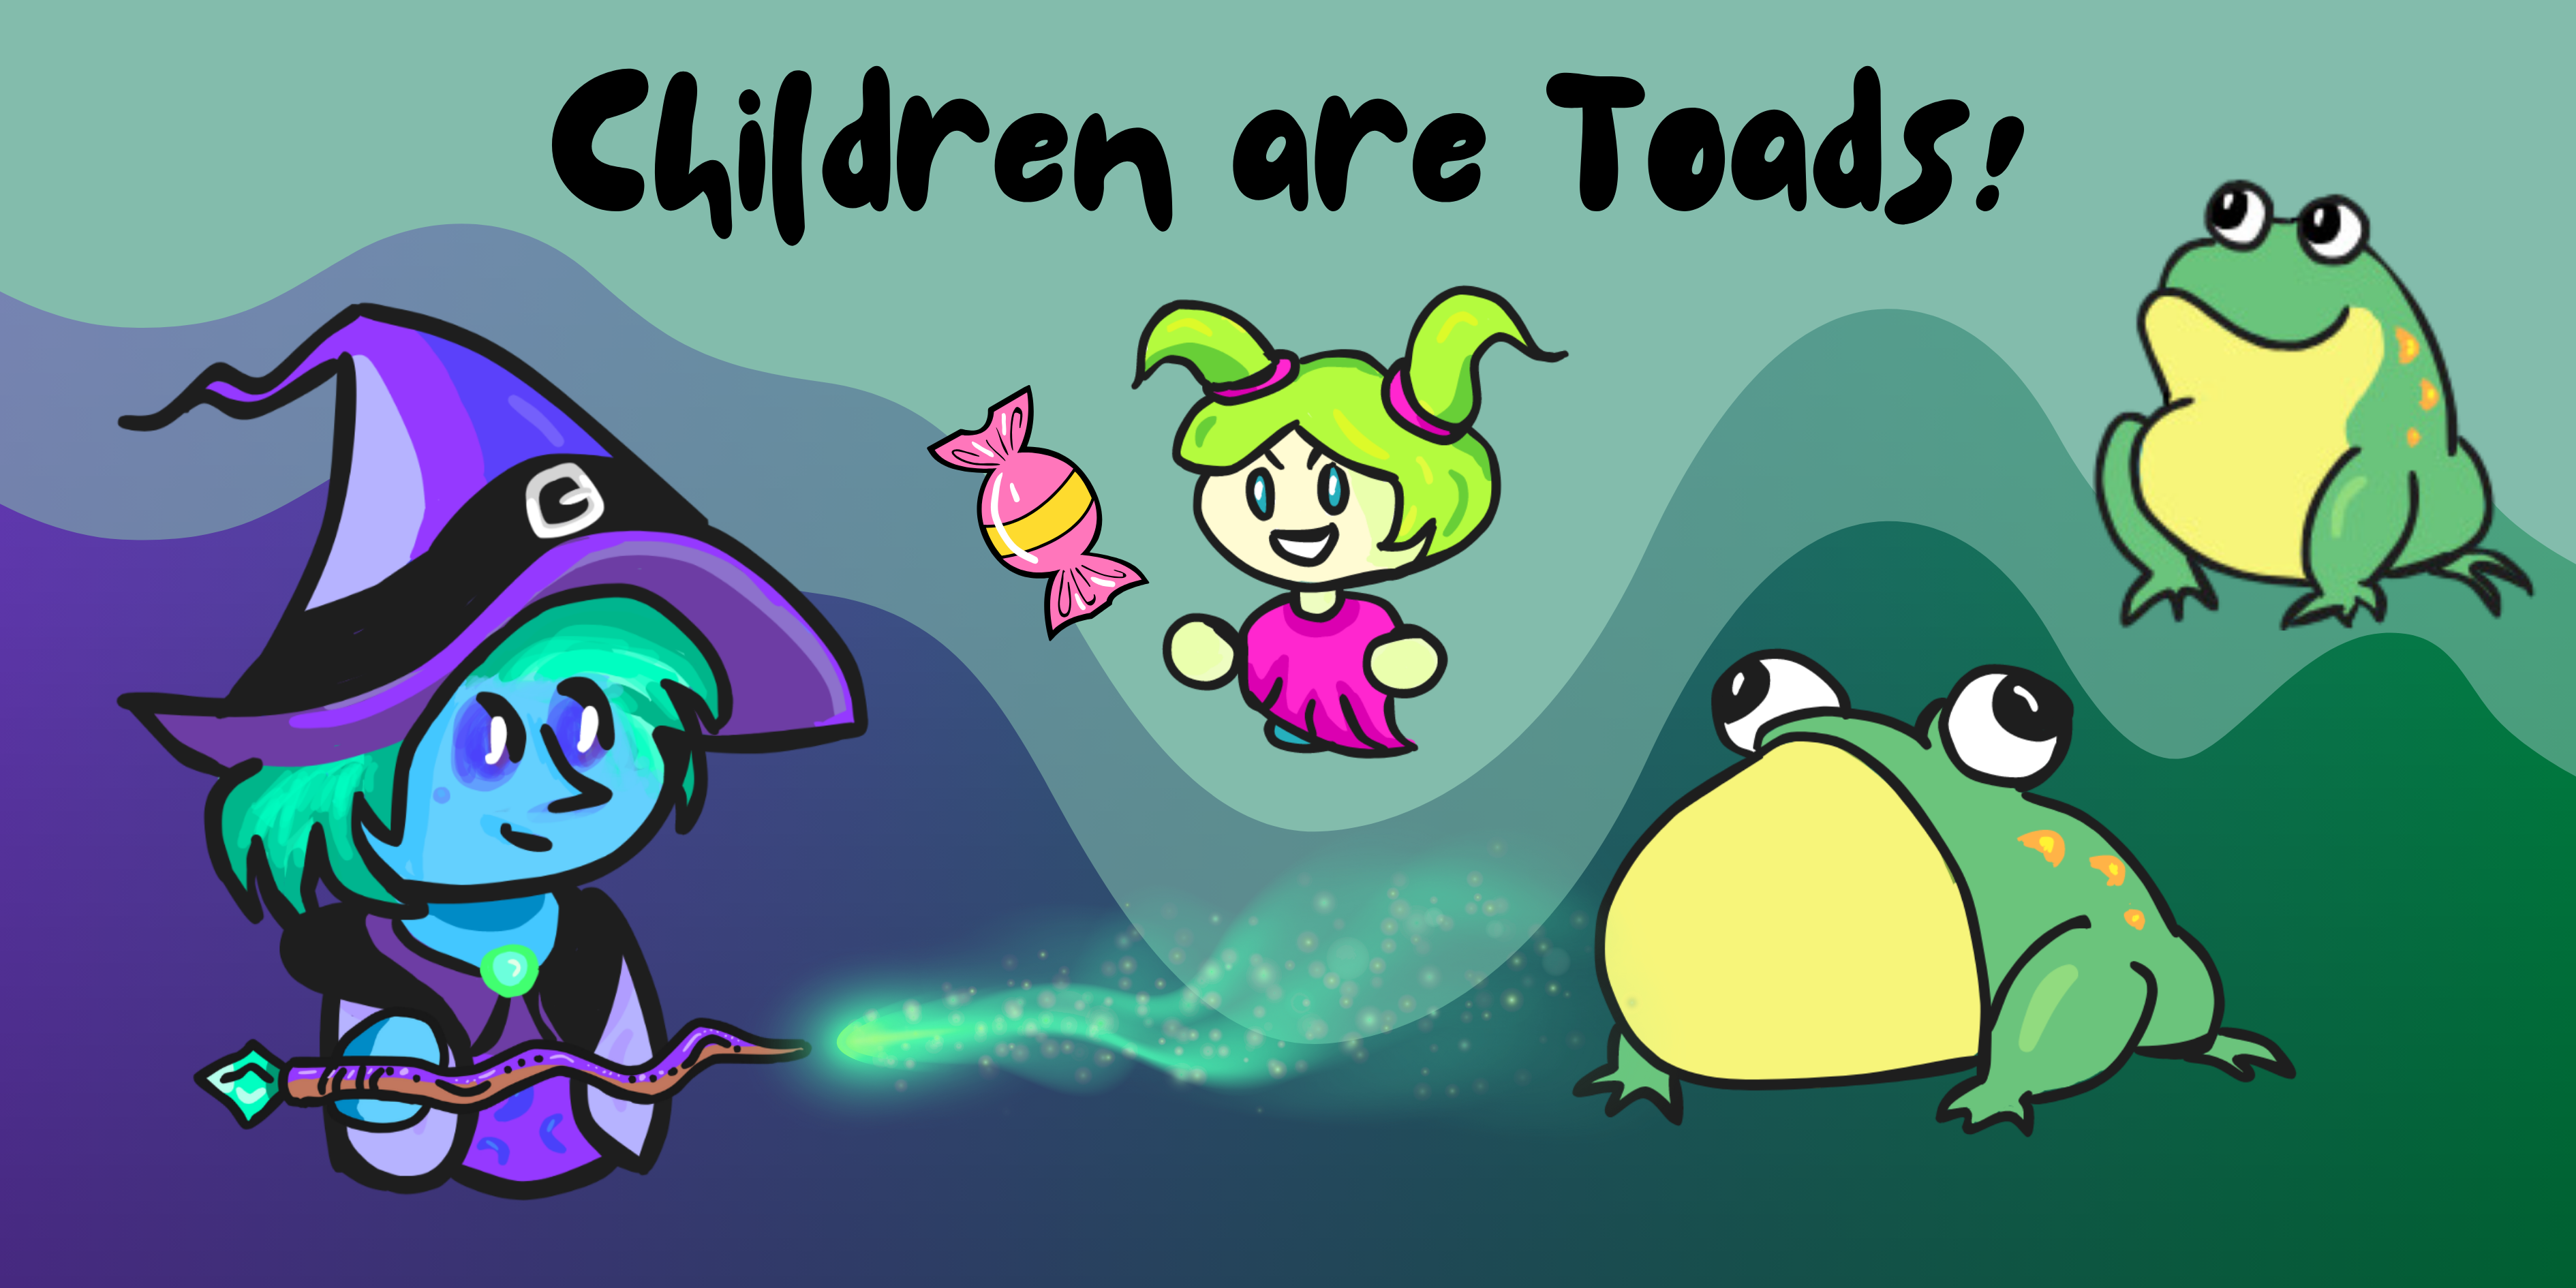 Children are Toads!